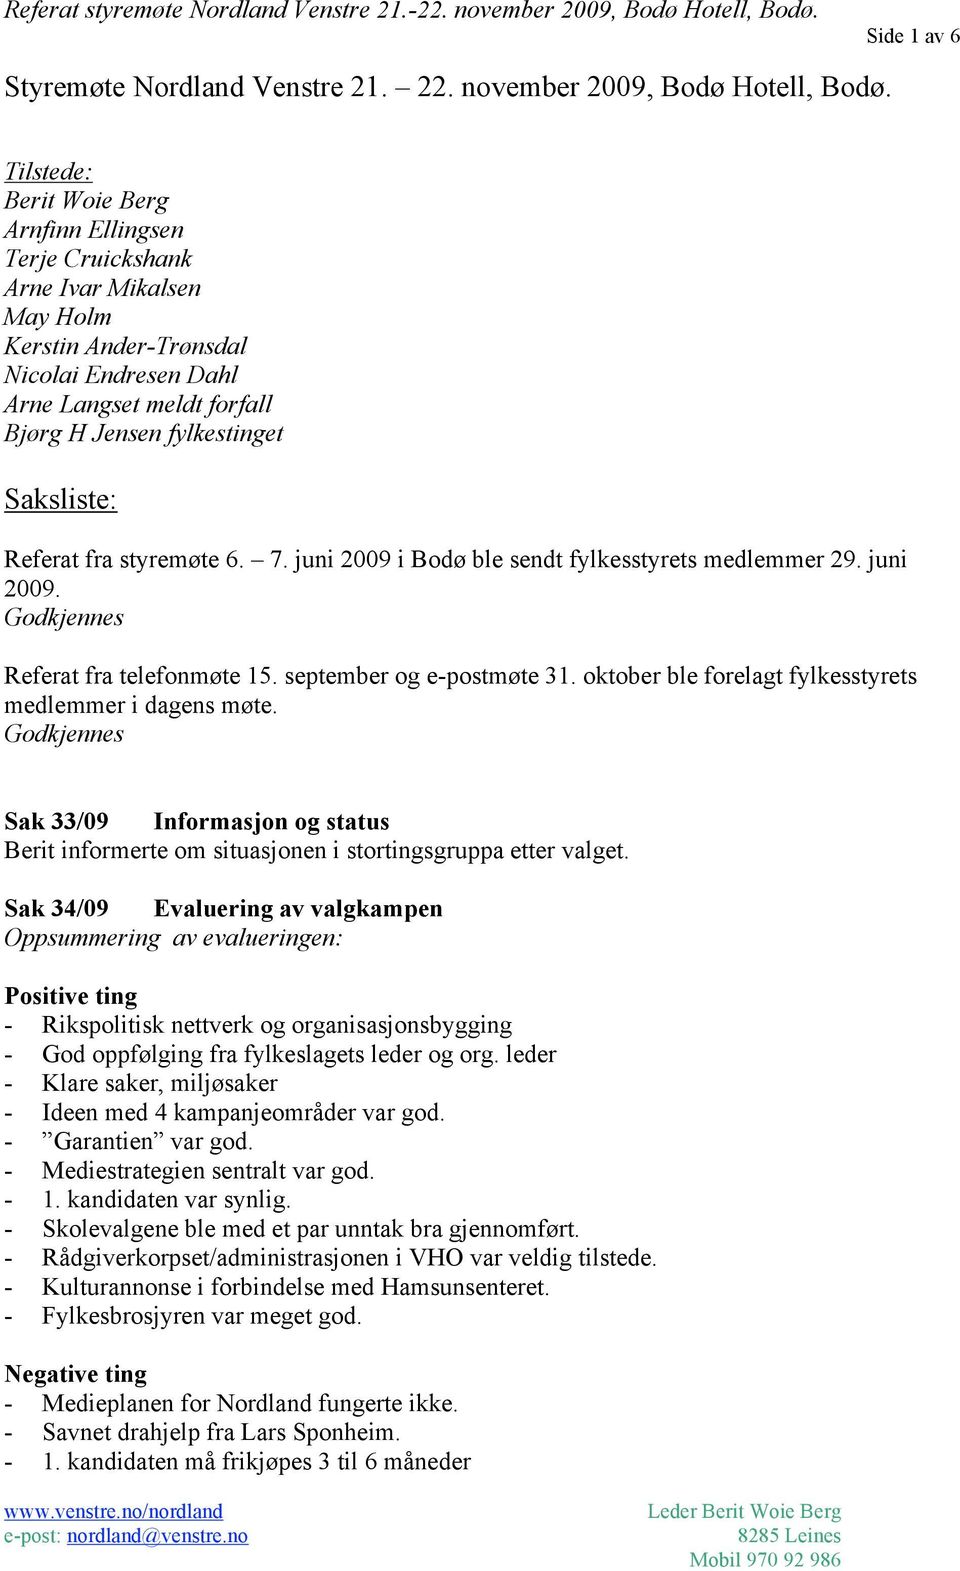 Saksliste: Referat fra styremøte 6. 7. juni 2009 i Bodø ble sendt fylkesstyrets medlemmer 29. juni 2009. Godkjennes Referat fra telefonmøte 15. september og e-postmøte 31.